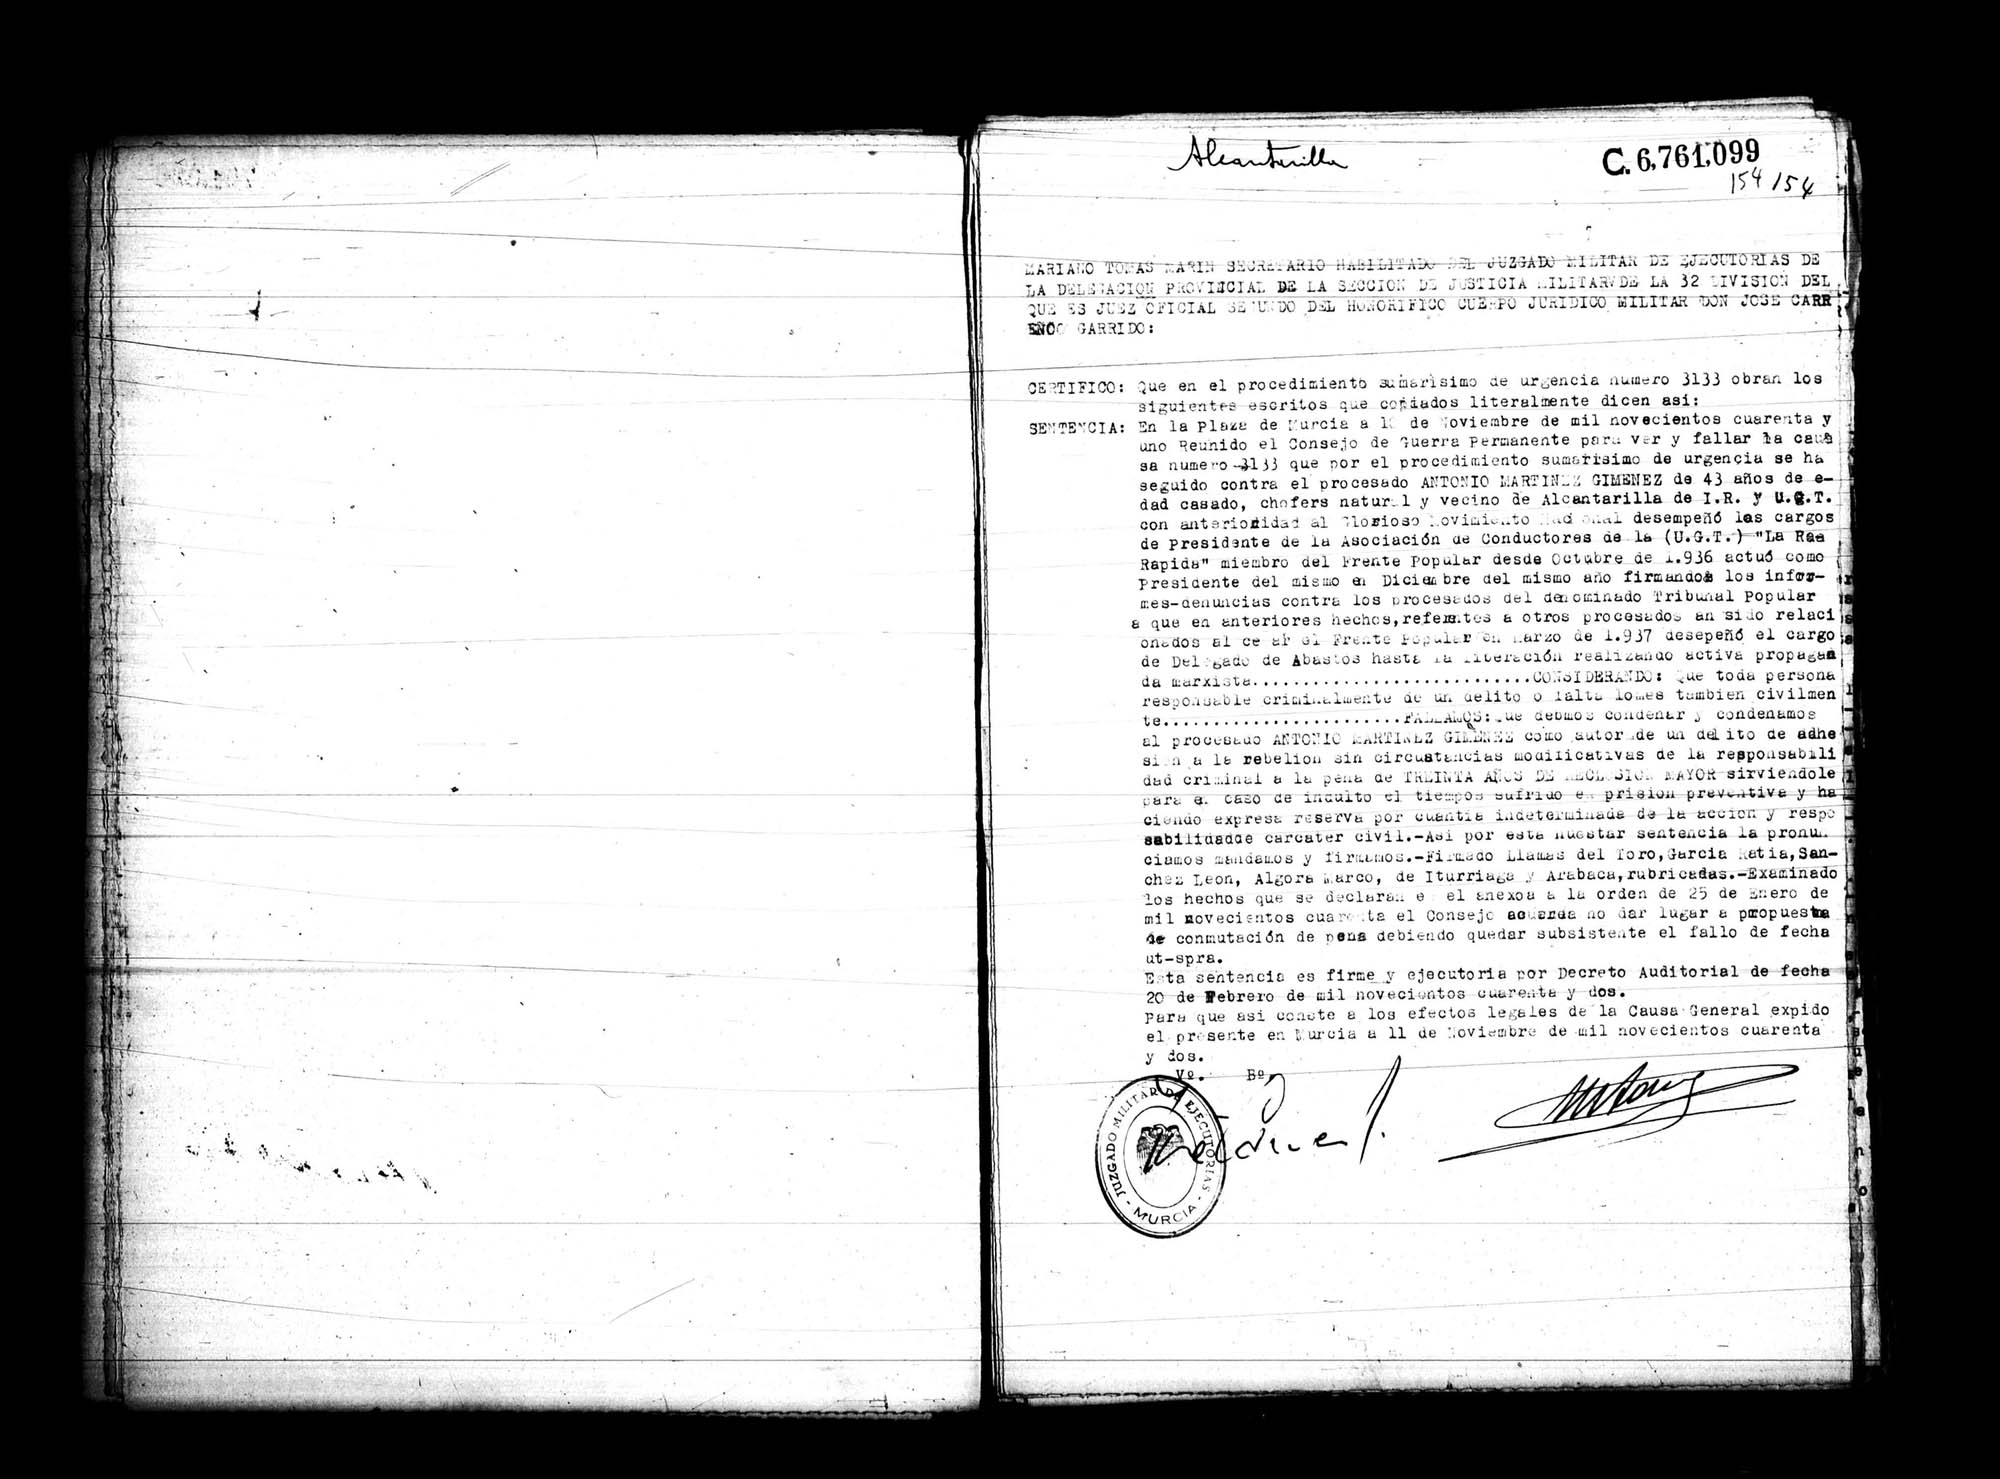 Certificado de la sentencia pronunciada contra Antonio Martínez Giménez, causa 3133, el 10 de noviembre de 1941 en Murcia.